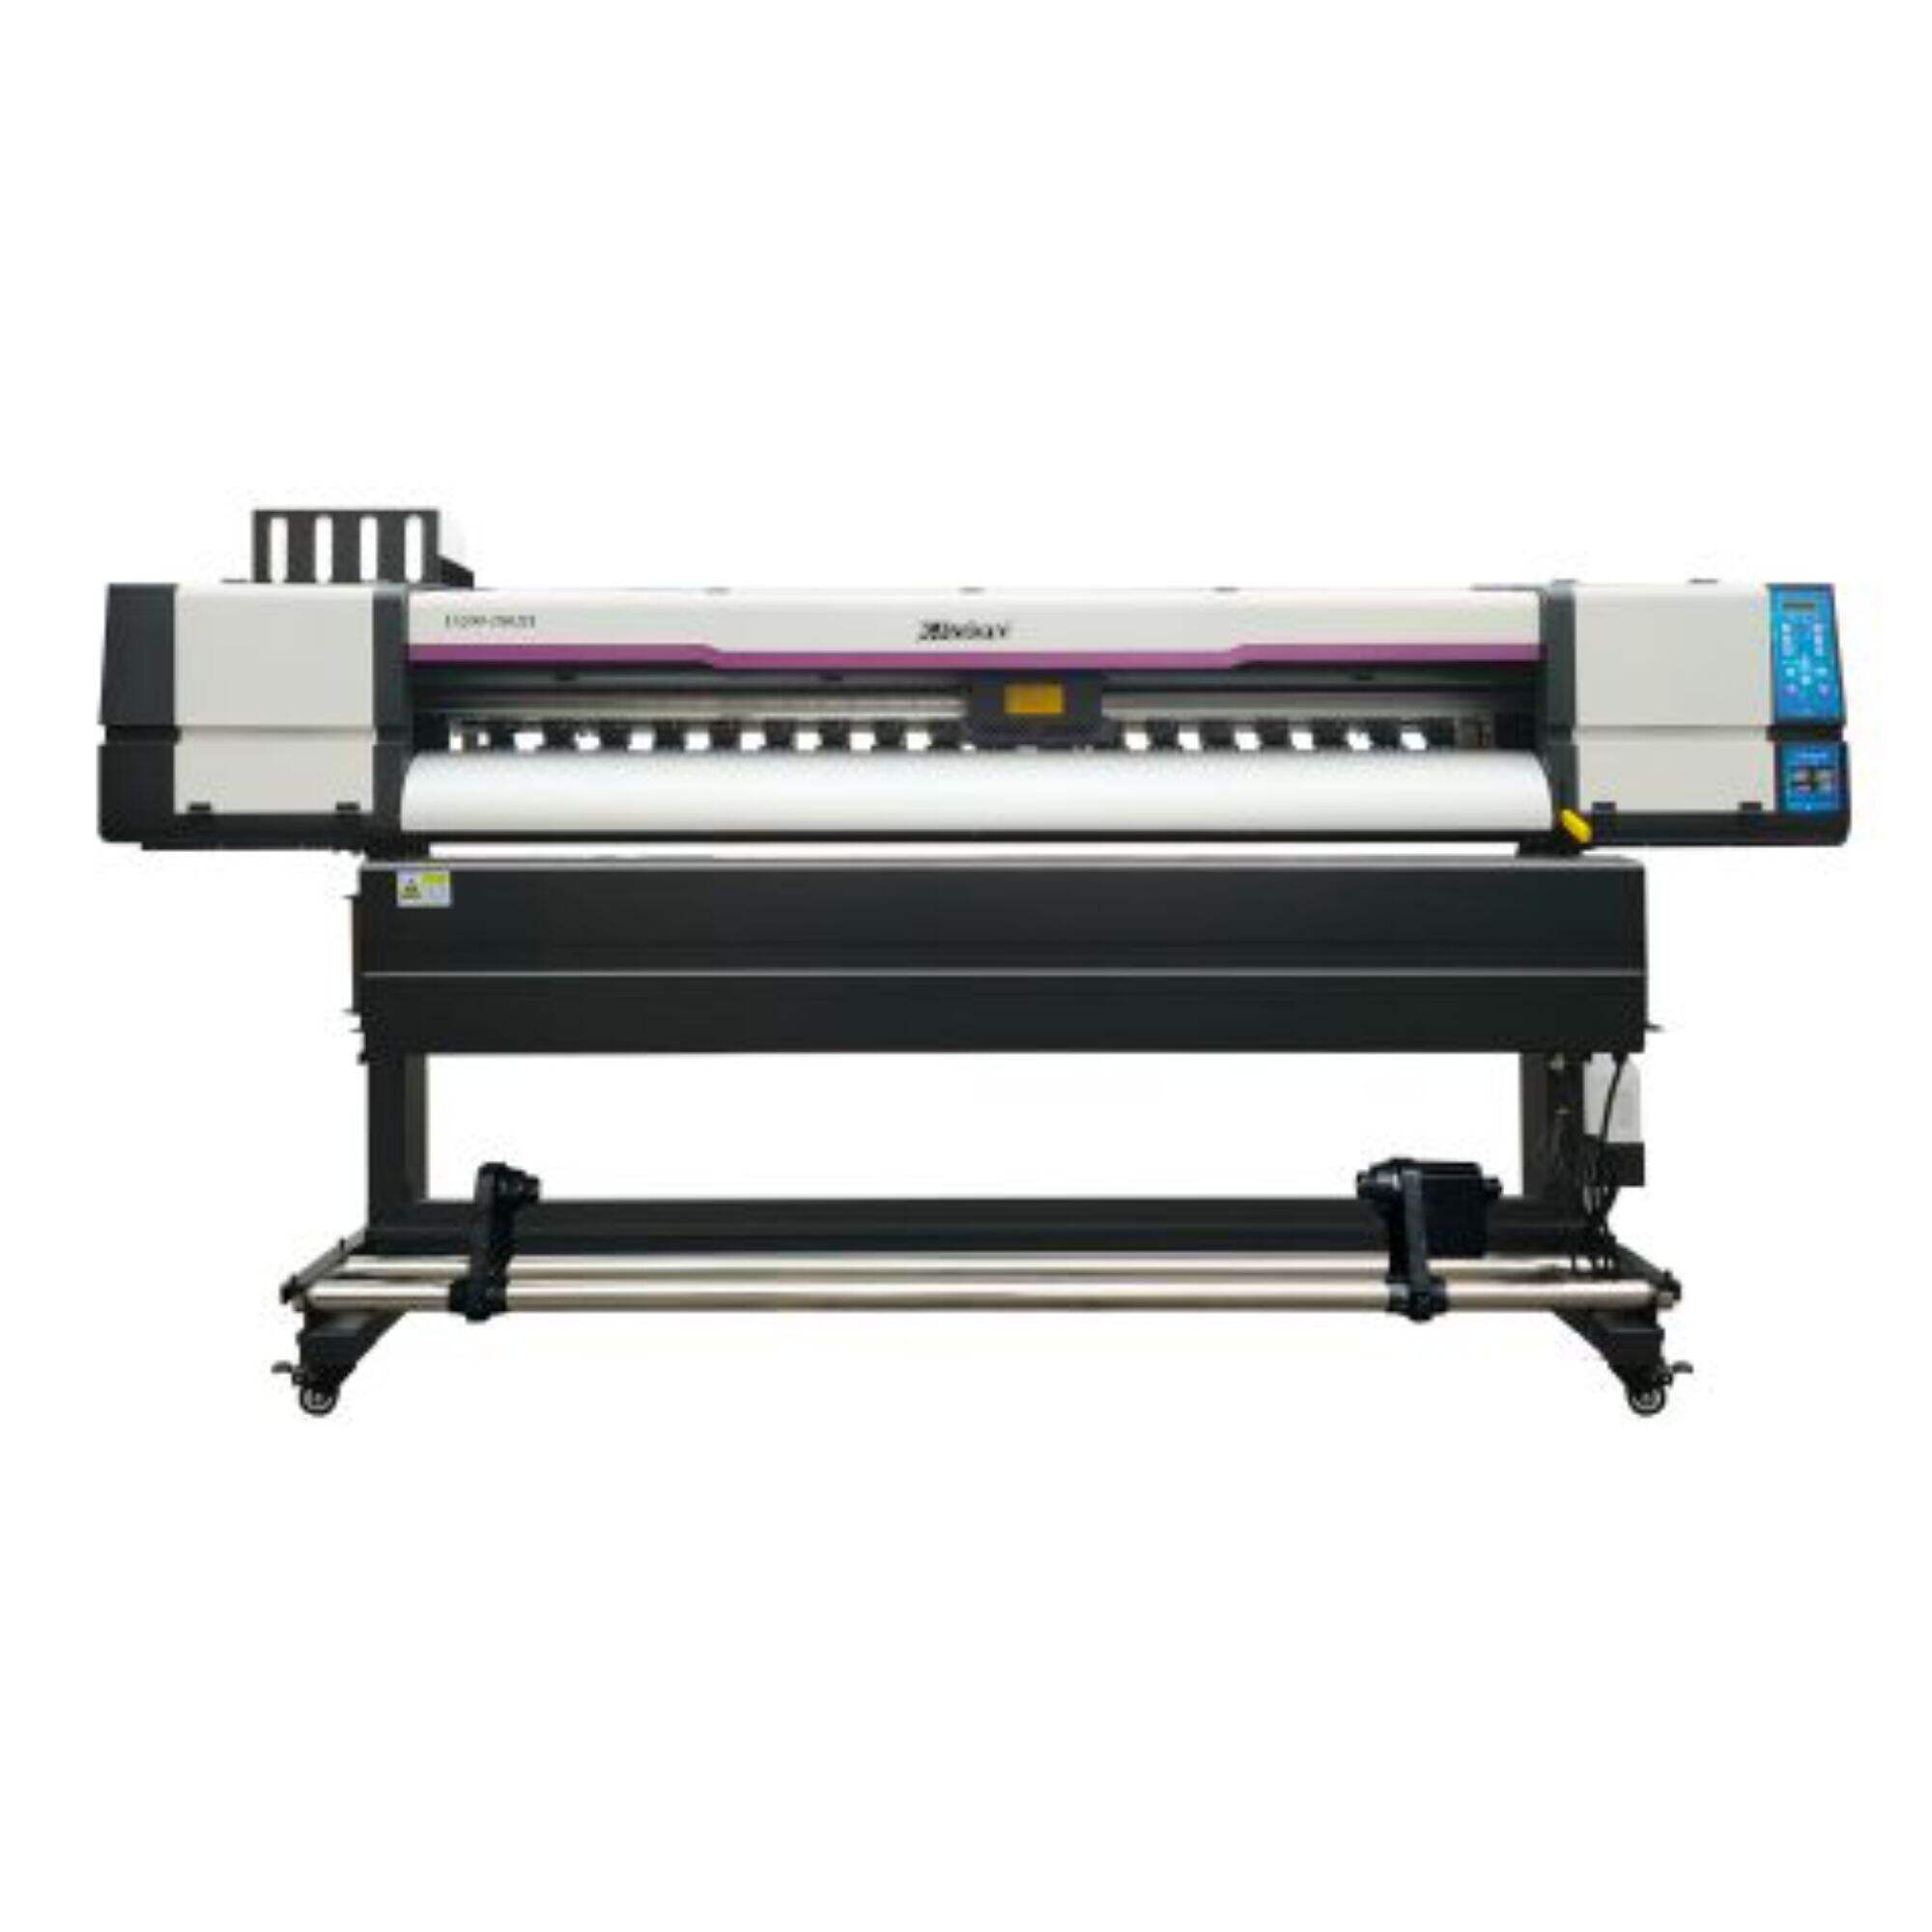 XL-1802H I3200 Printer dalam/luar ruangan